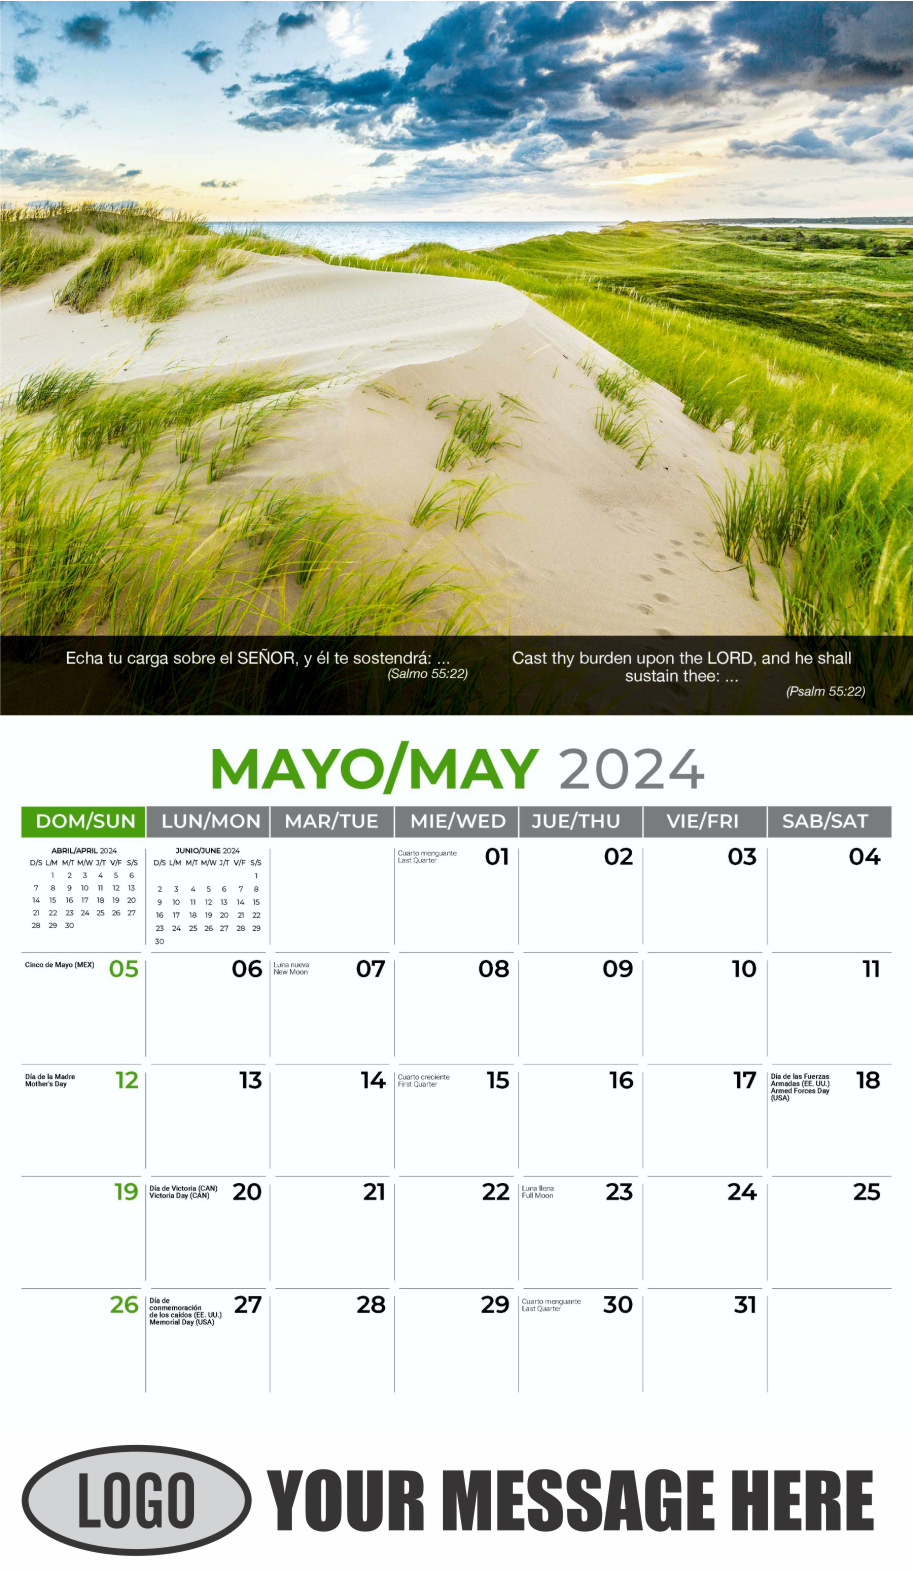 Faith Passages 2024 Bilingual Christian Faith Business Promotional Calendar - May